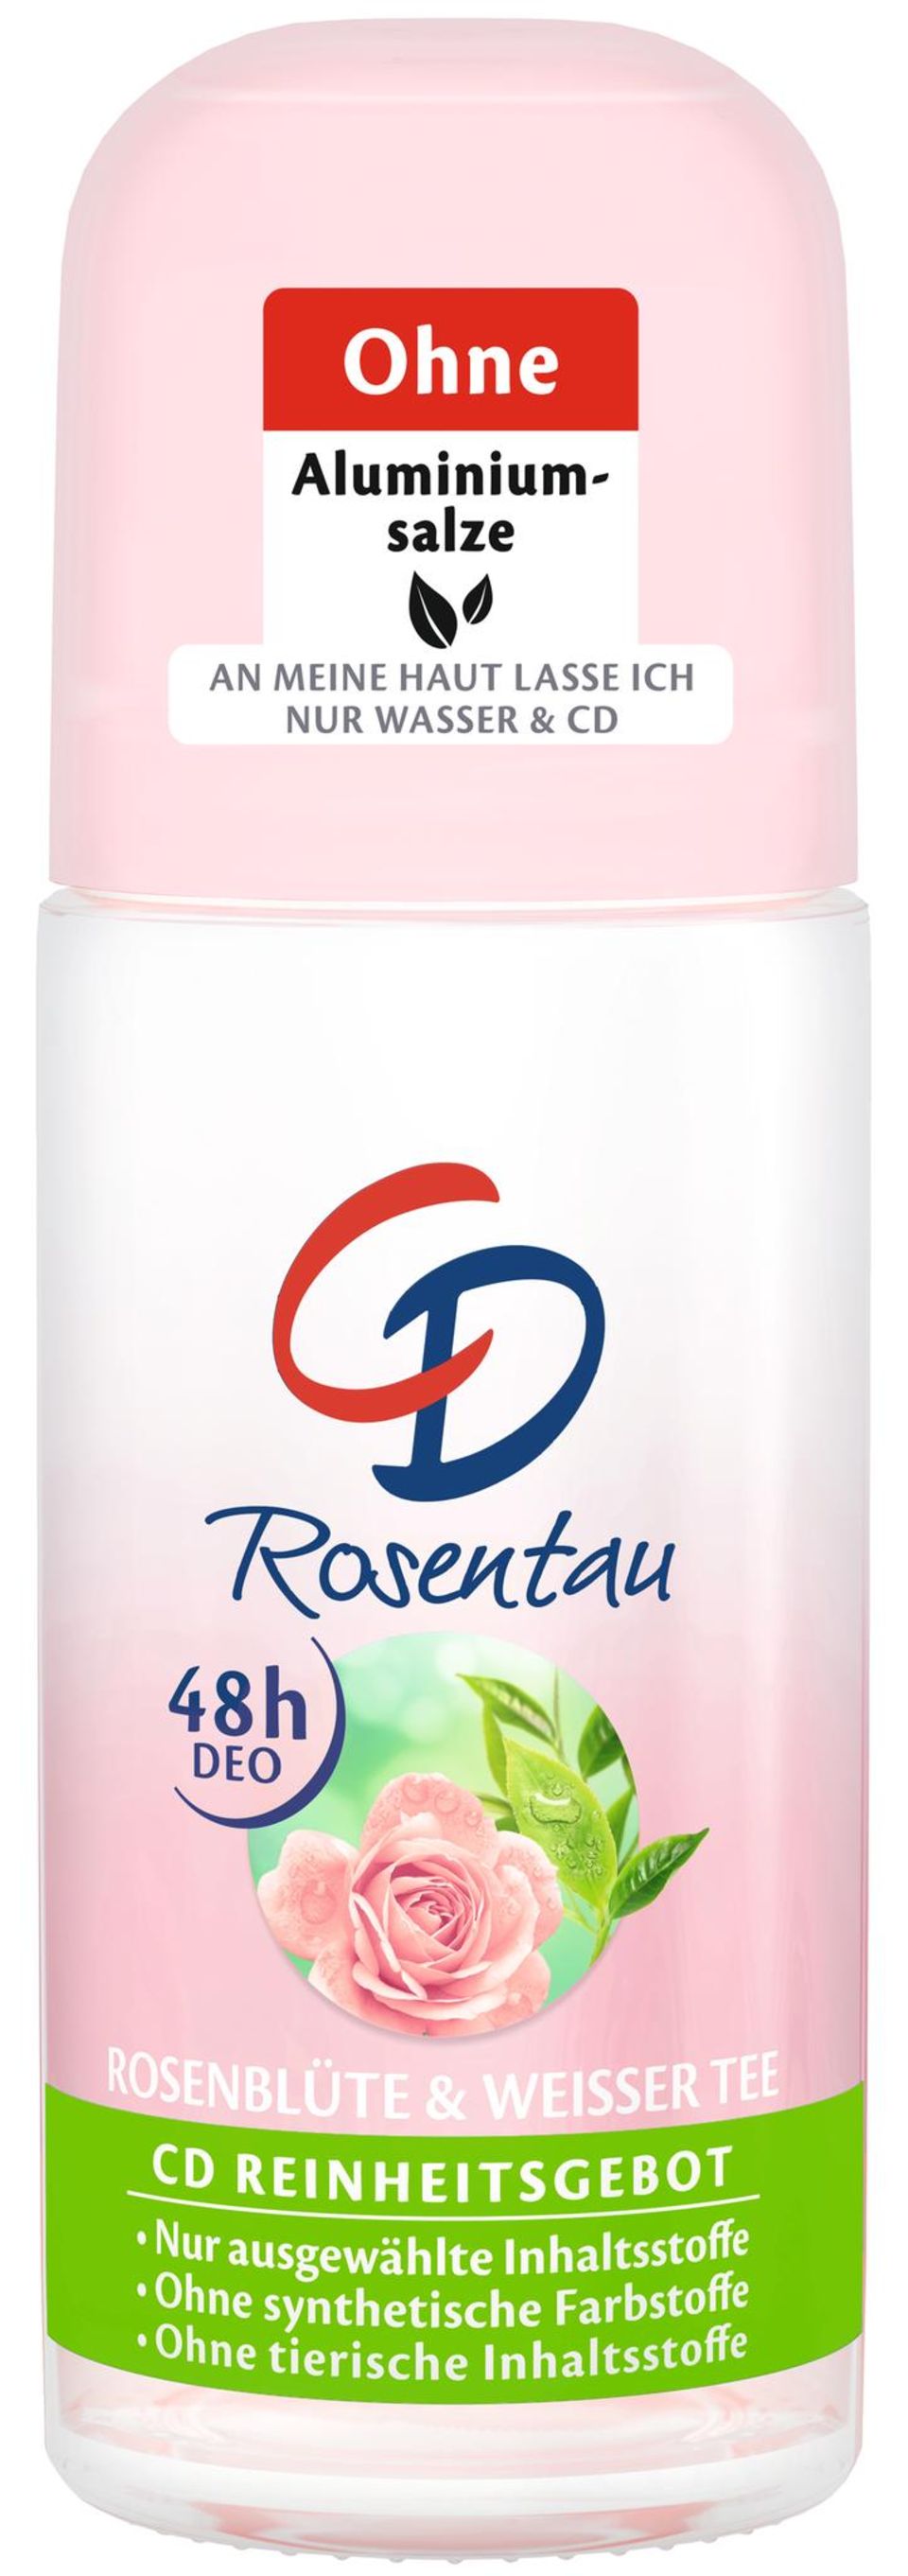 Ein Deo, das pflegt, vor unangenehmen Gerüchen schützt und beruhigend wirkt –der CD Rosentau-Deodorant verzaubert mit natürlichen Extrakten und einer floral-femininen Duftkomposition dank Rosenblüten und weißem Tee. Um 2 Euro.